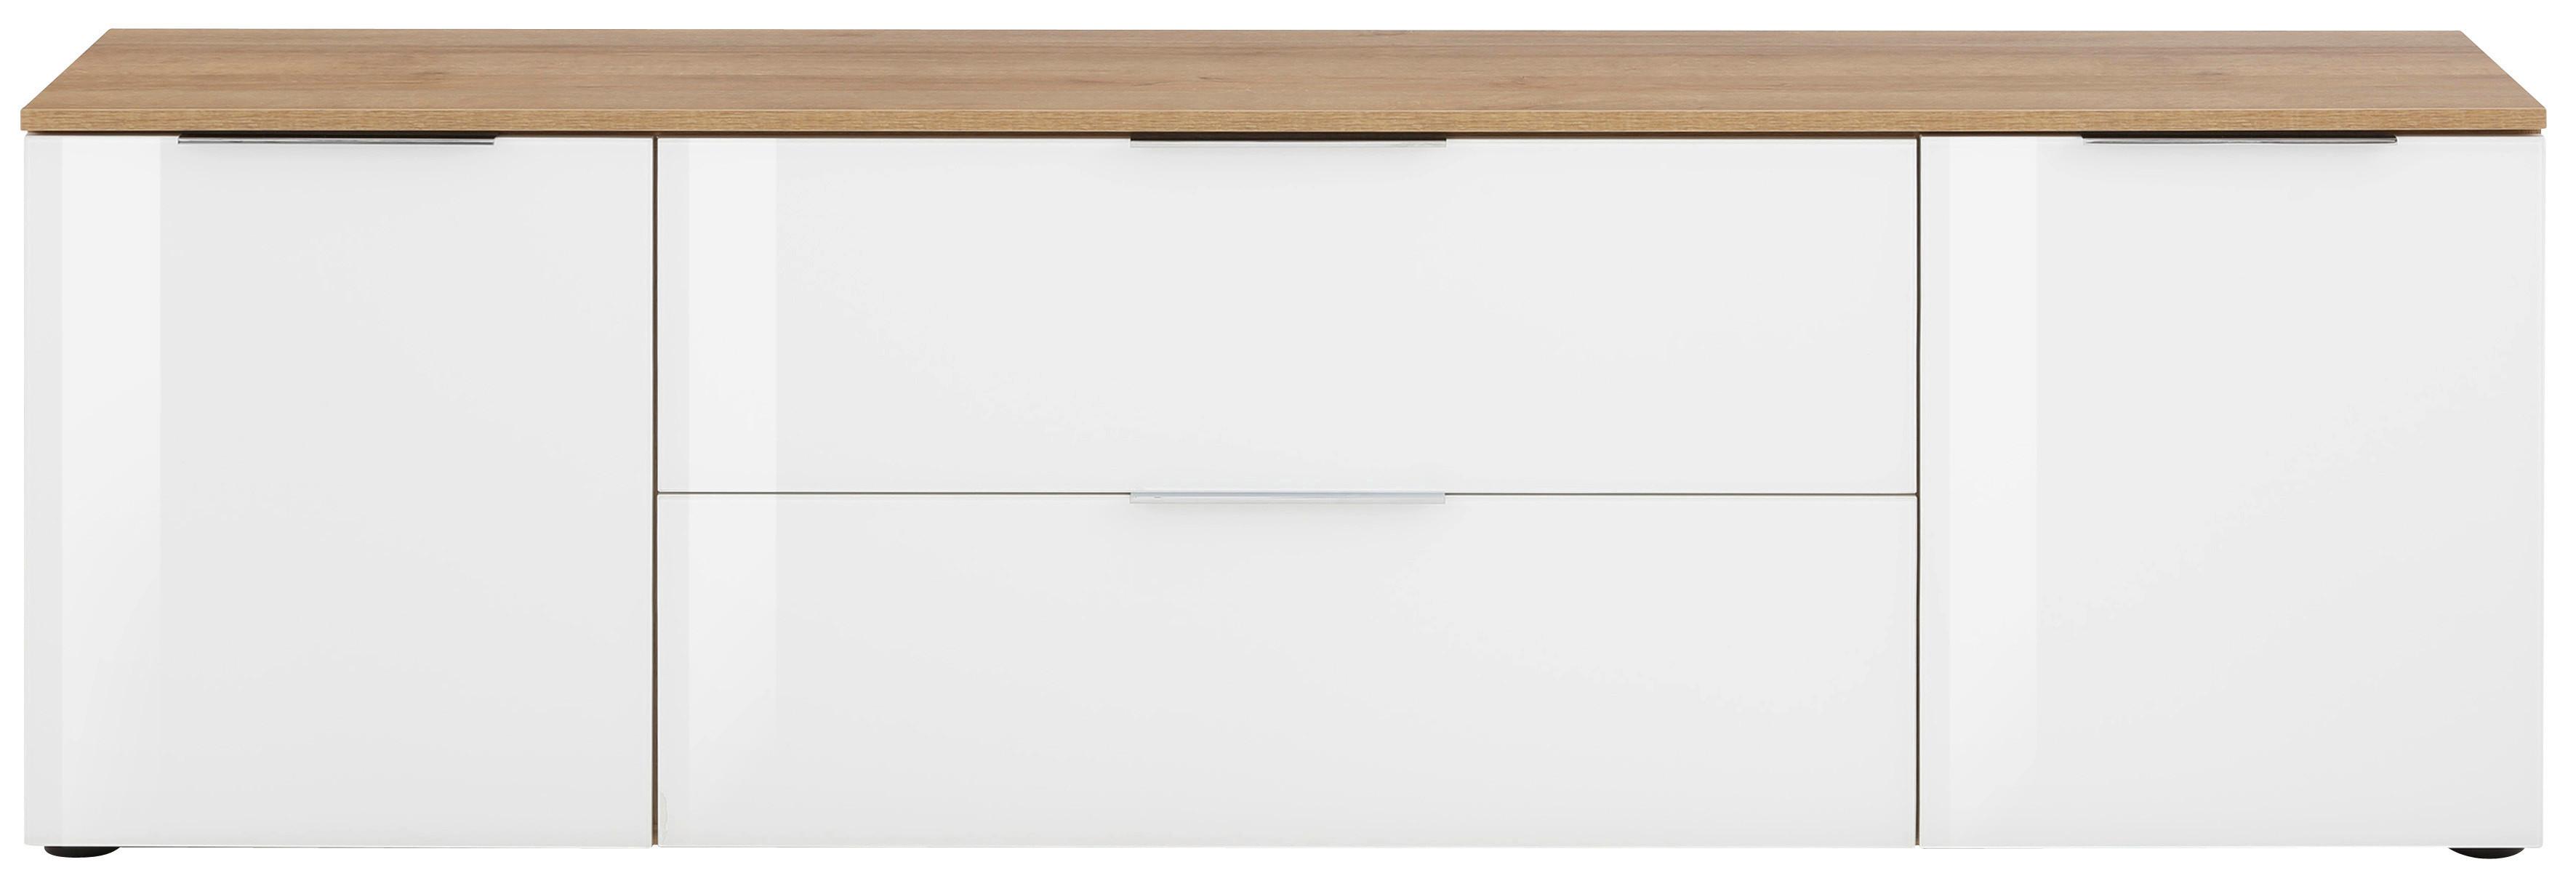 Lowboard in Weiß/Eichefarben - Chromfarben/Eichefarben, MODERN, Glas/Holzwerkstoff (180/55/40cm) - Premium Living